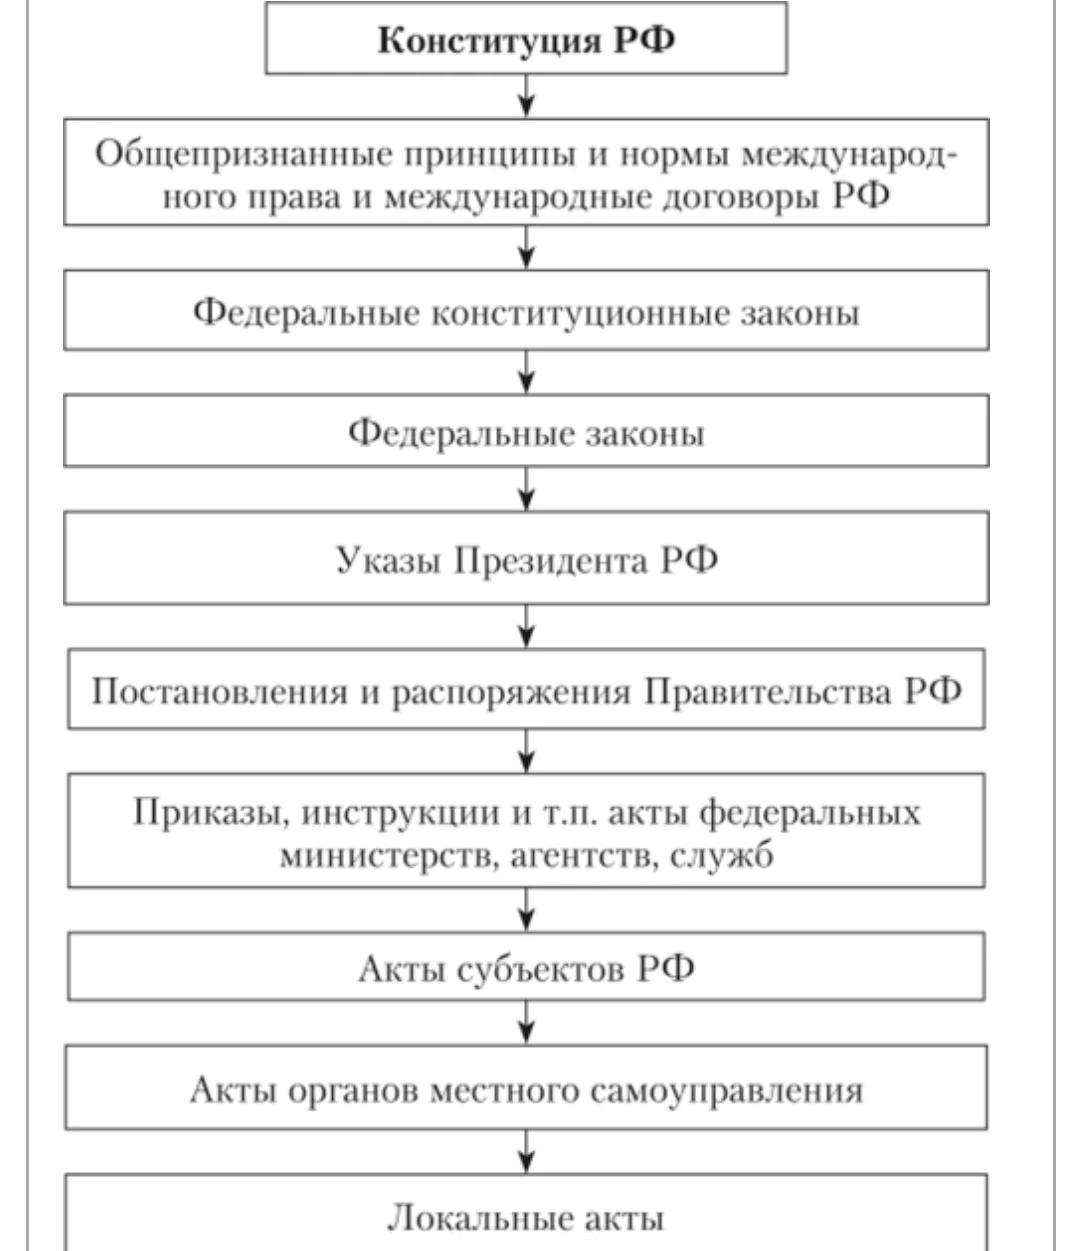 Иерархия источников права в РФ по юридической силе